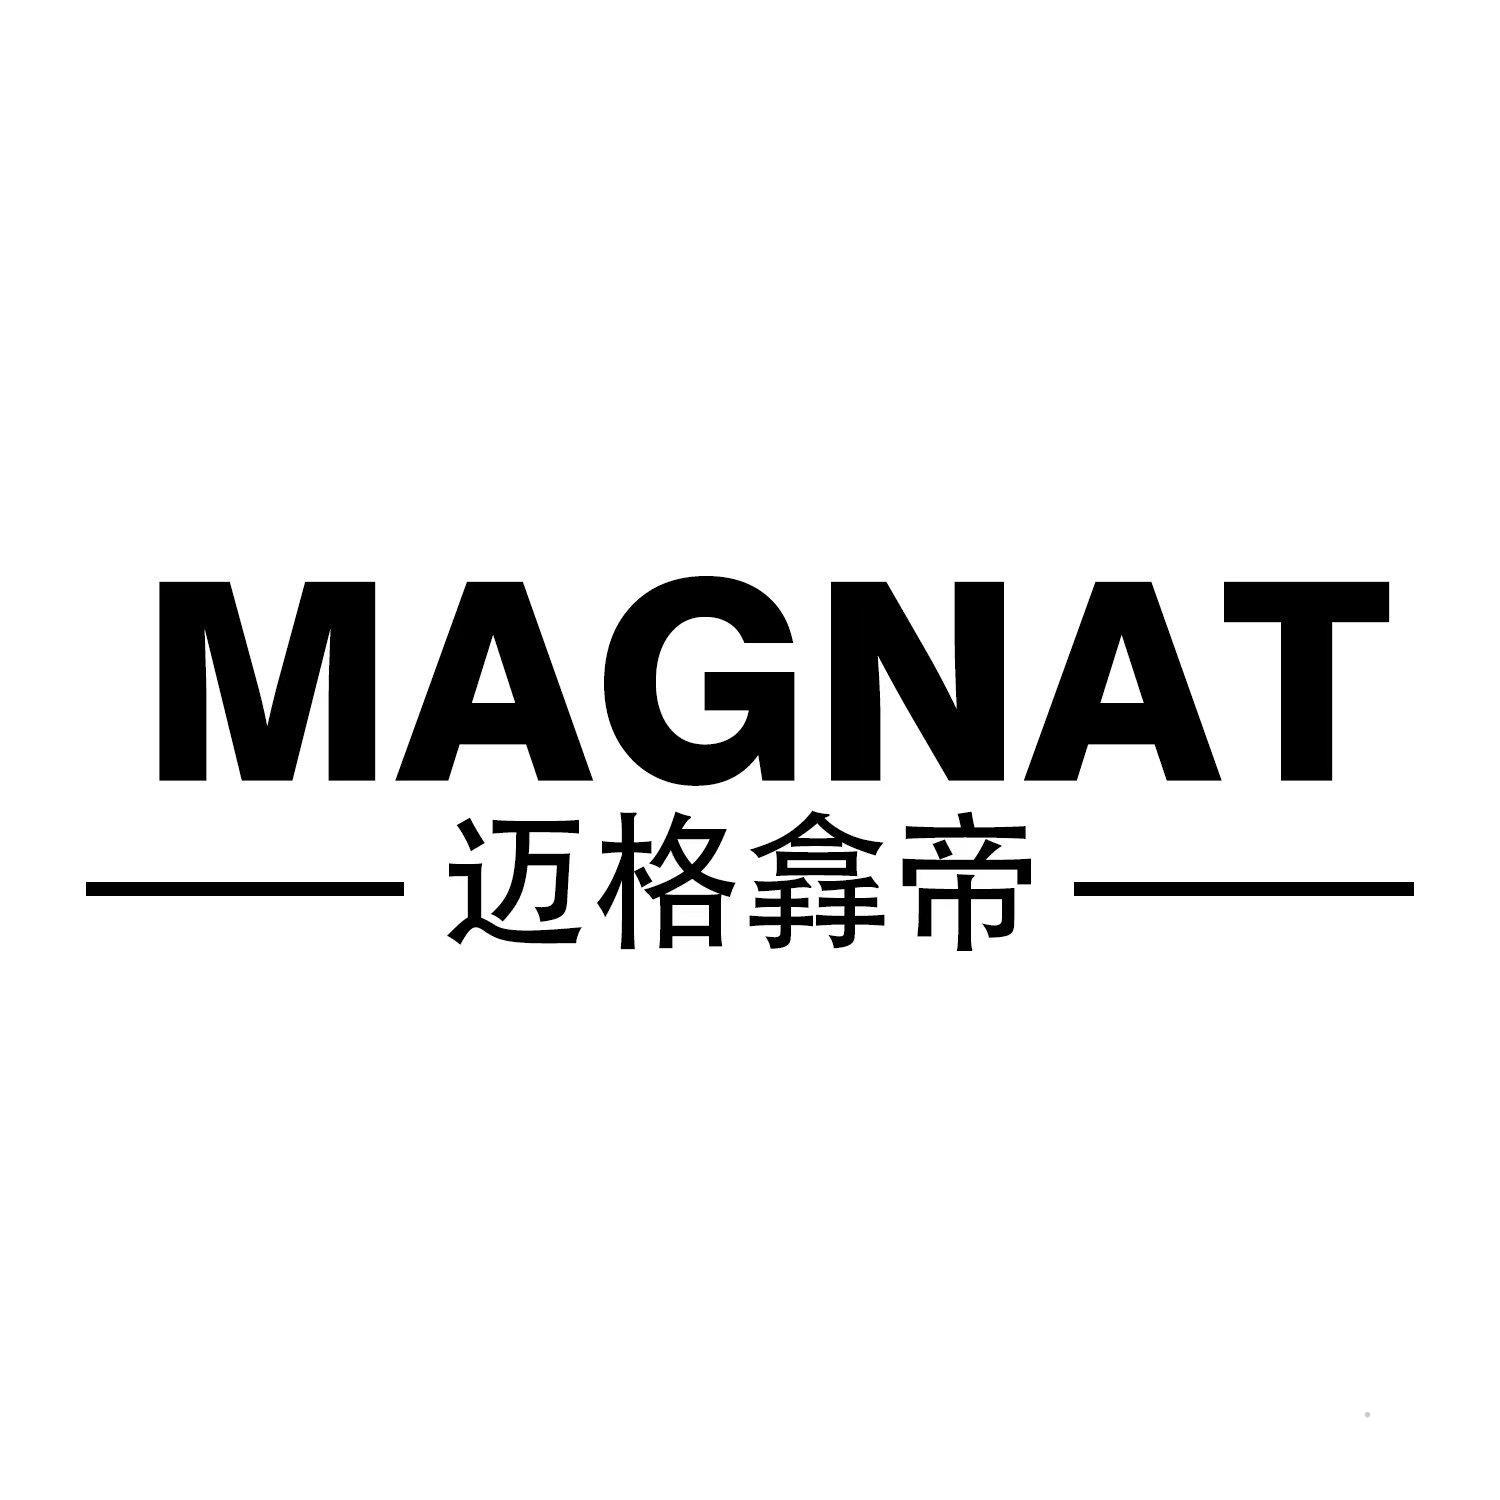 MAGNAT 迈格搻帝